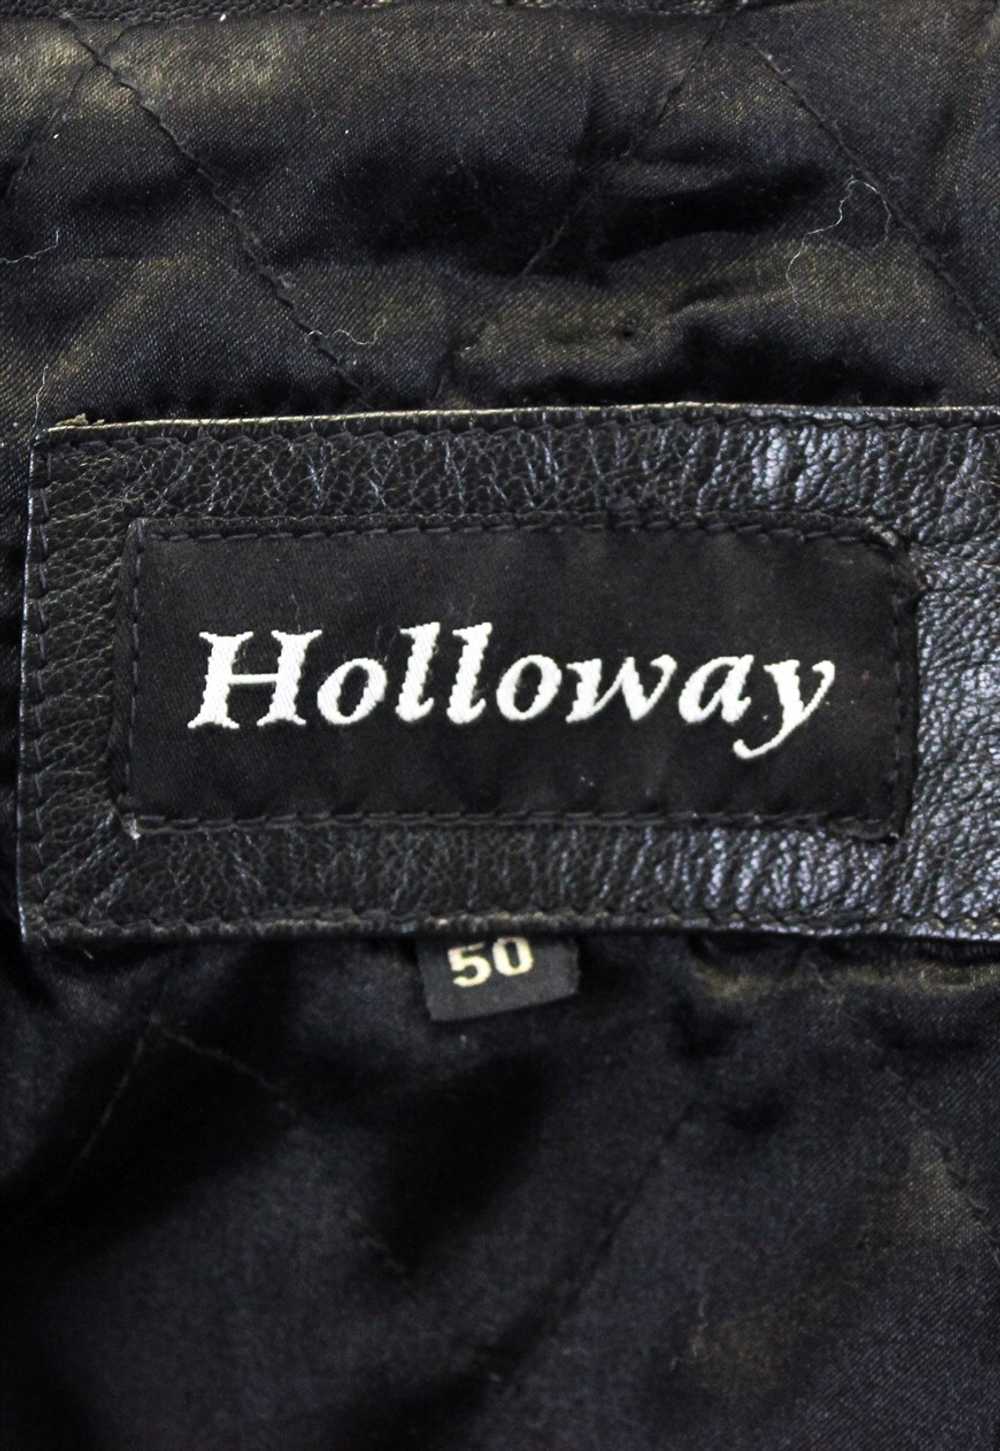 HOLLOWAY UK 40 US Leather EU 50 Over Coat Jacket … - image 3